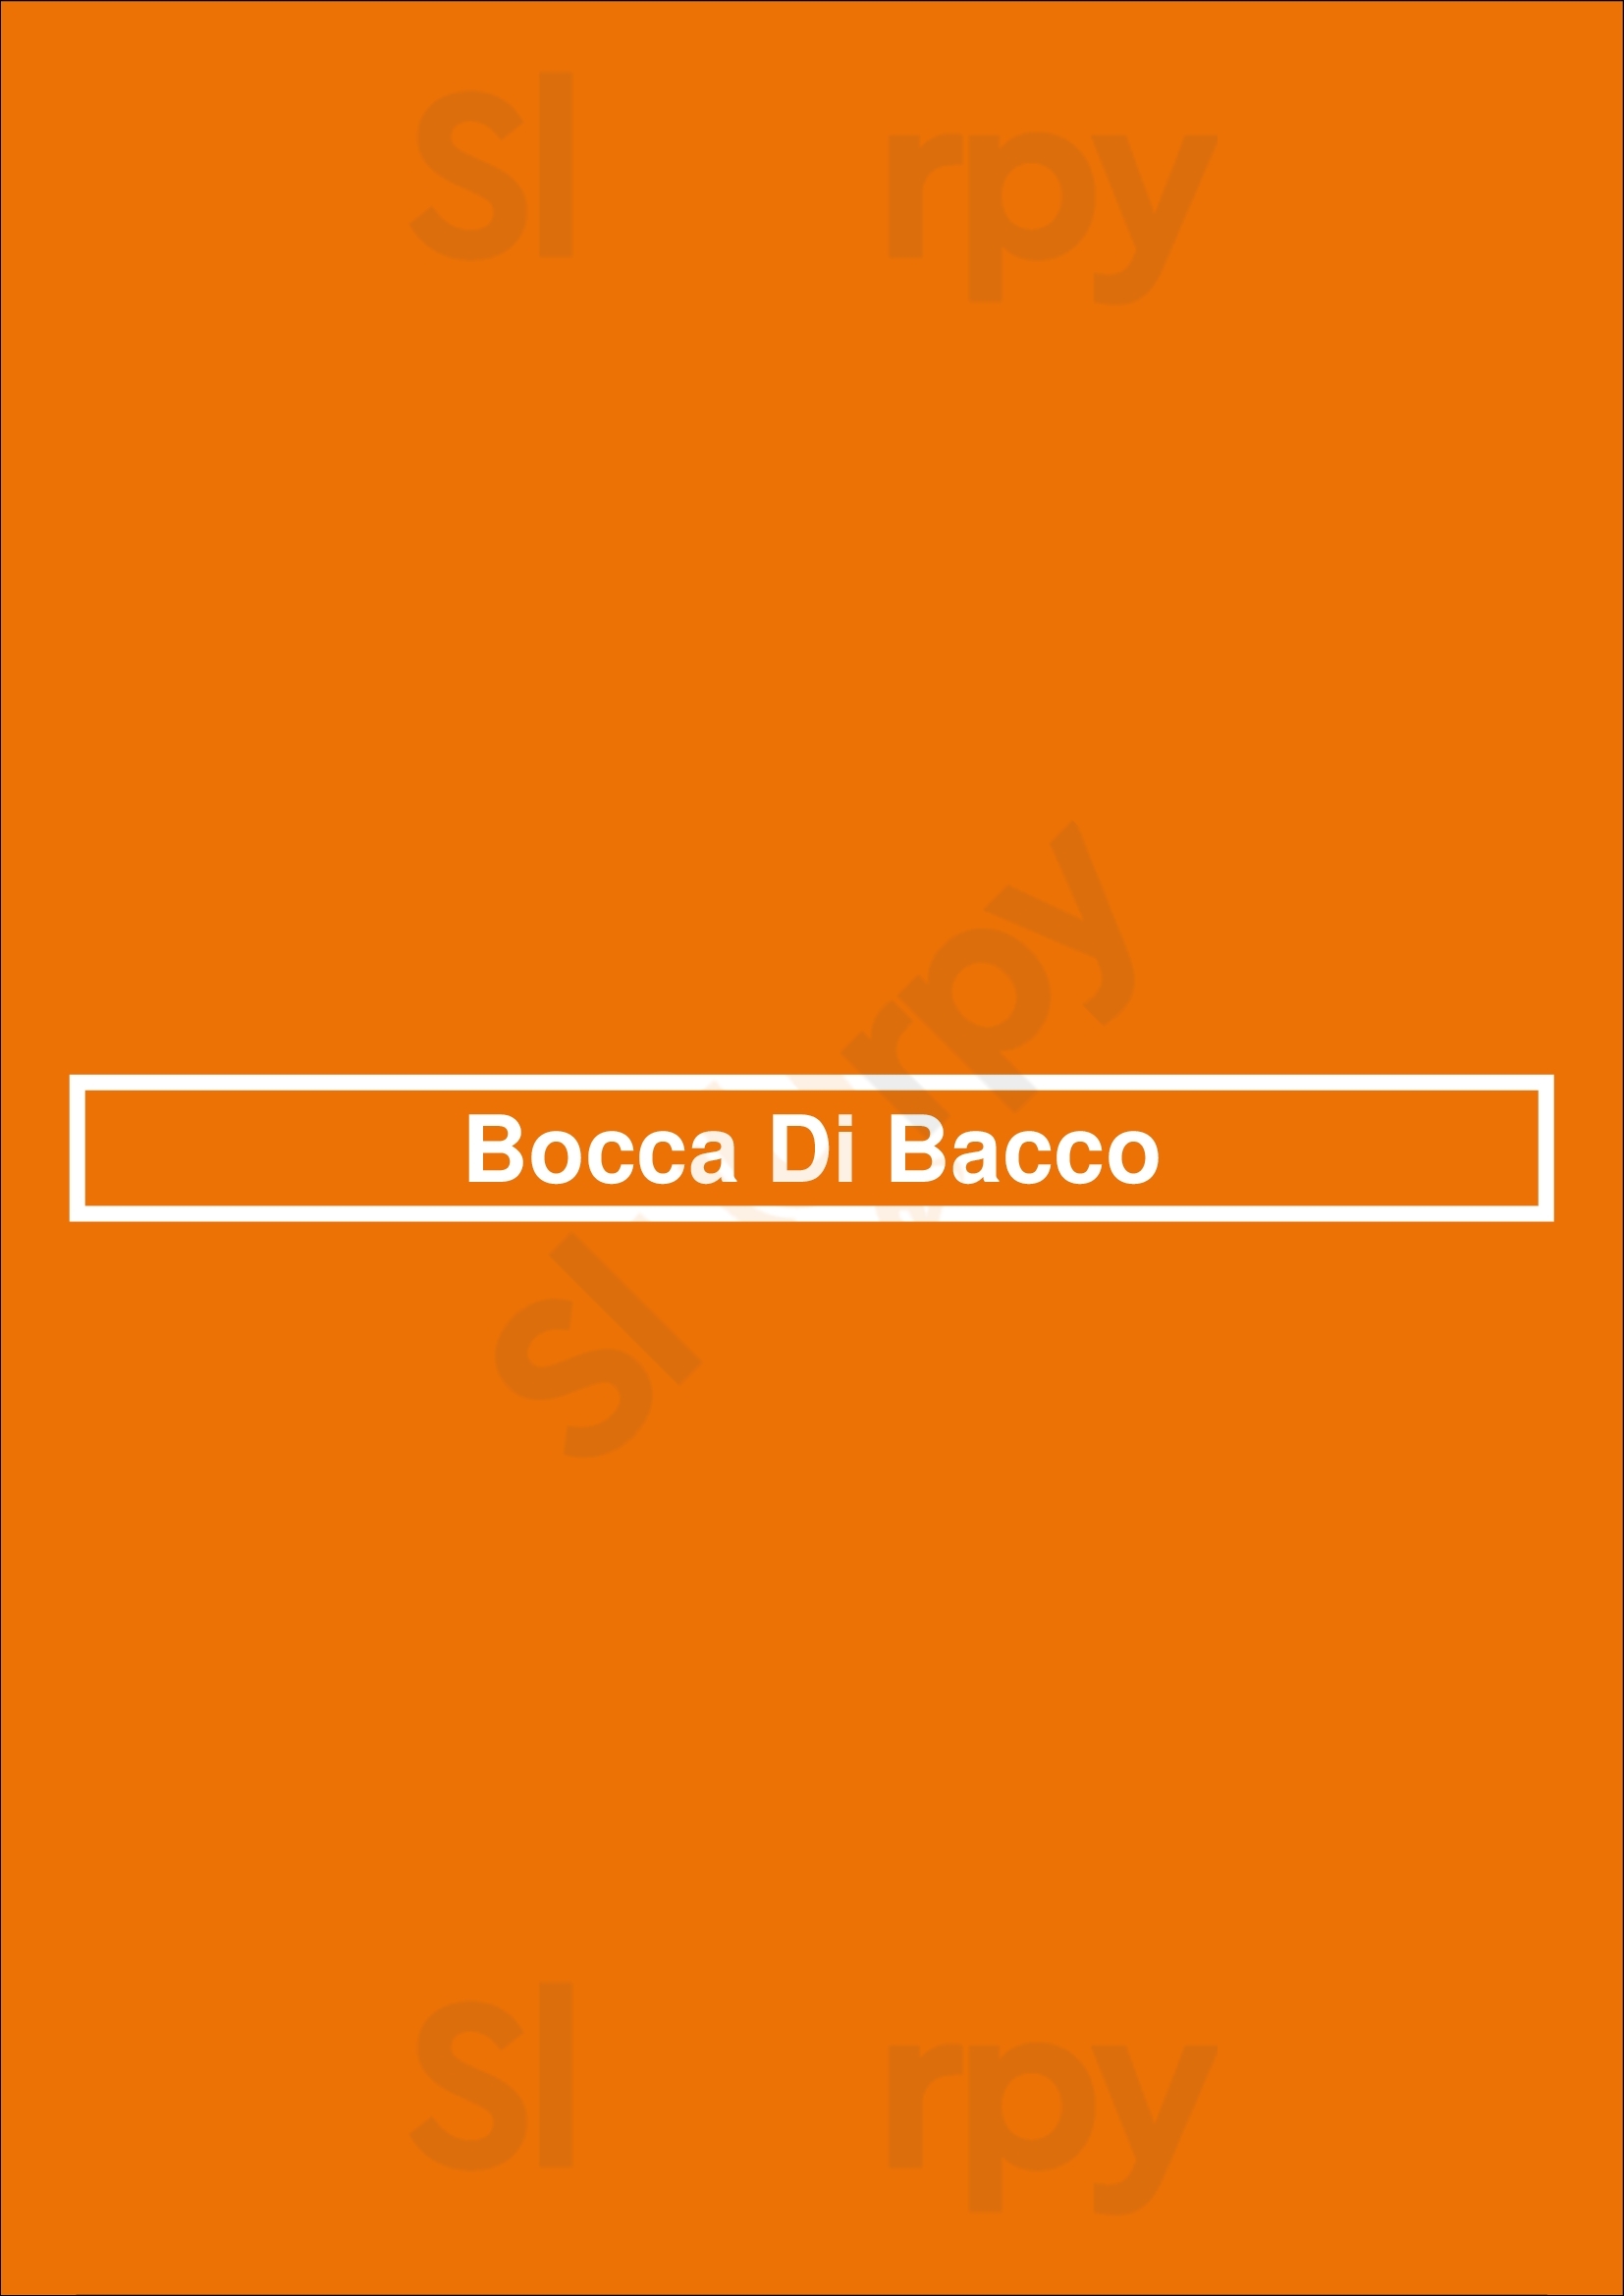 Bocca Di Bacco - Chelsea New York City Menu - 1